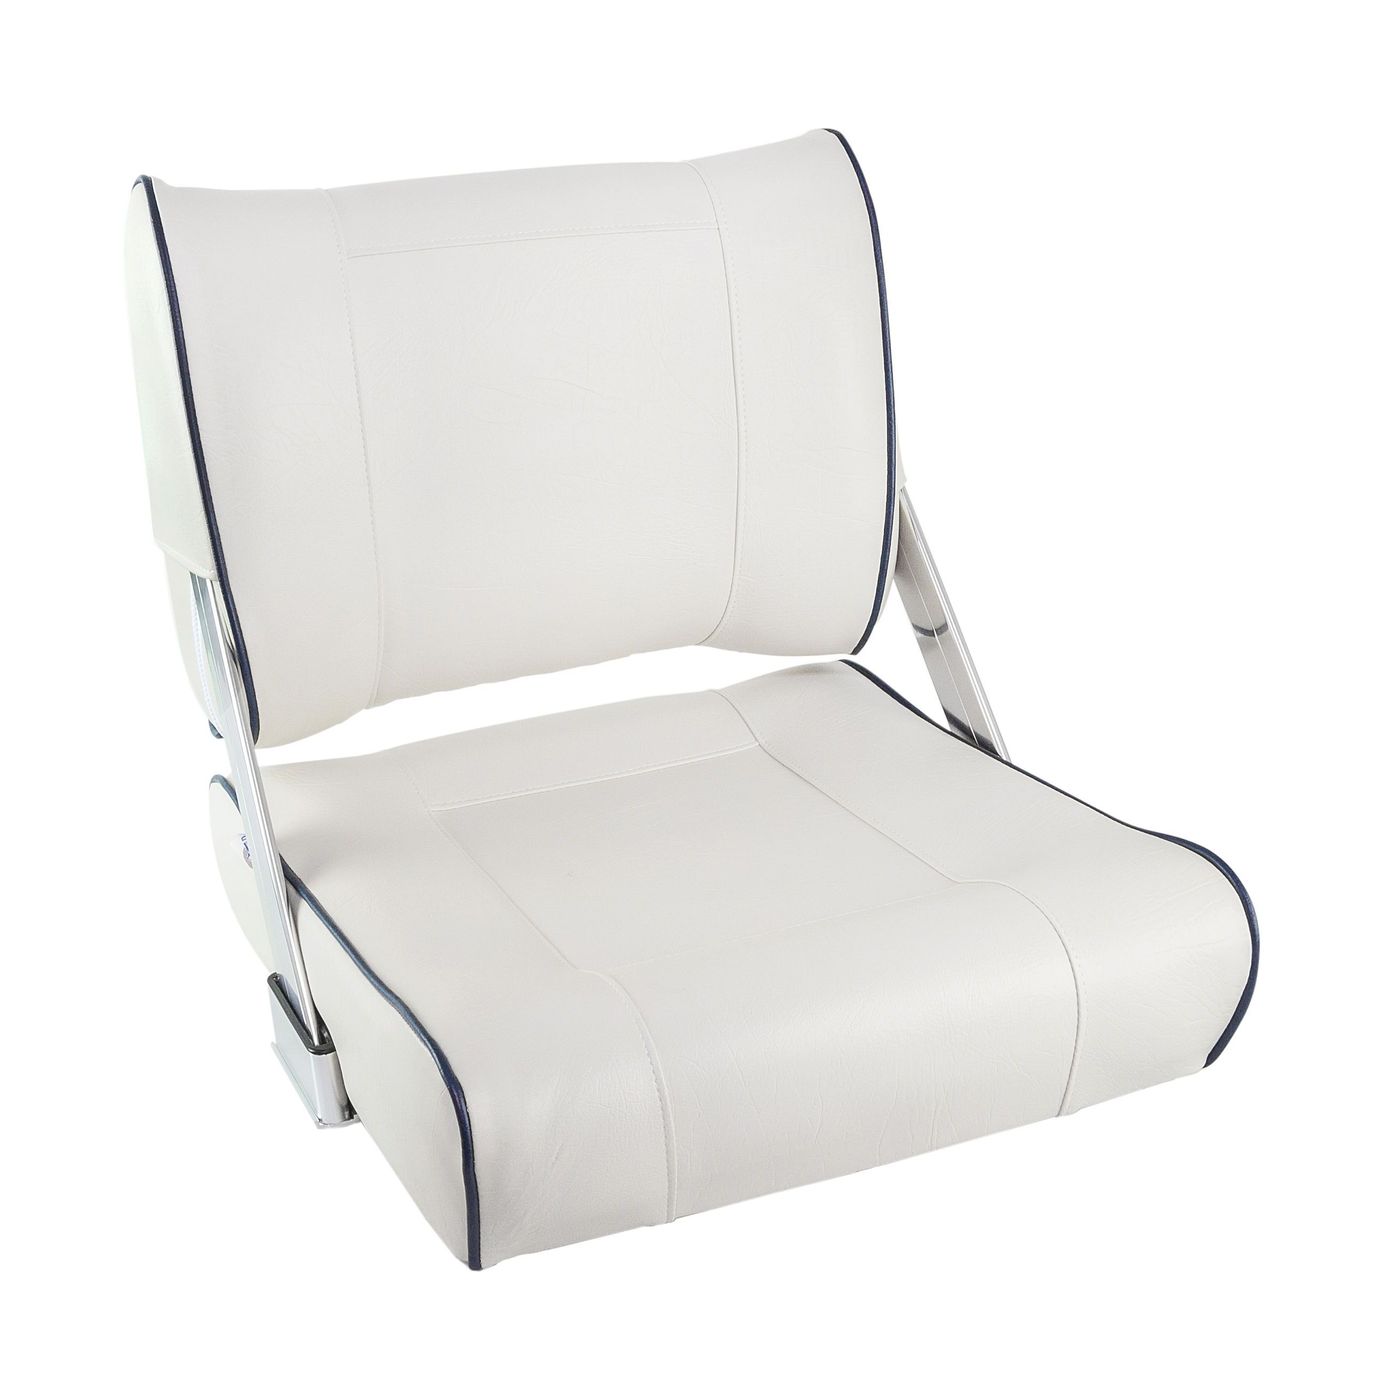 Кресло мягкое с перекидной спинкой белого цвета и синим кантом 1042048 кресло с перекидной спинкой обивка белый винил 16102w mr